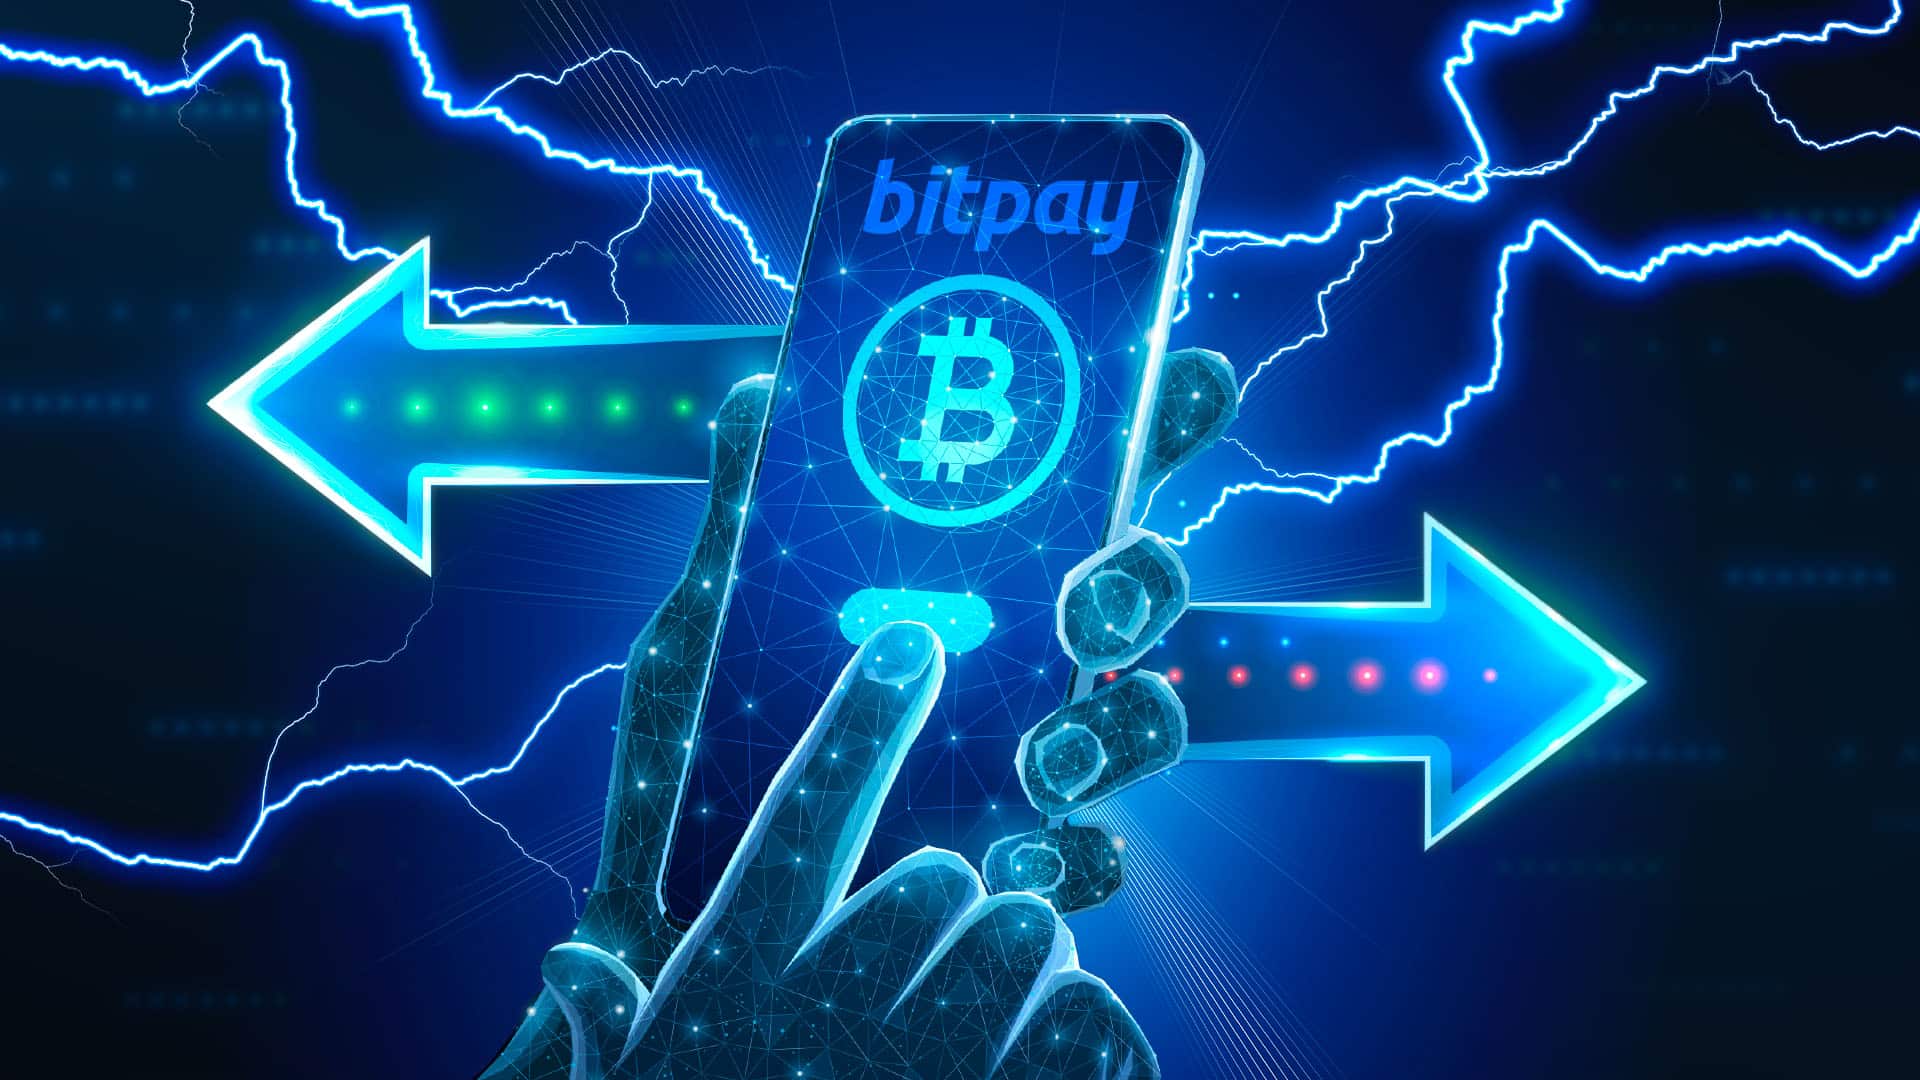 Pagos en BitPay vía Lightning de Bitcoin se duplicaron en menos de un año 